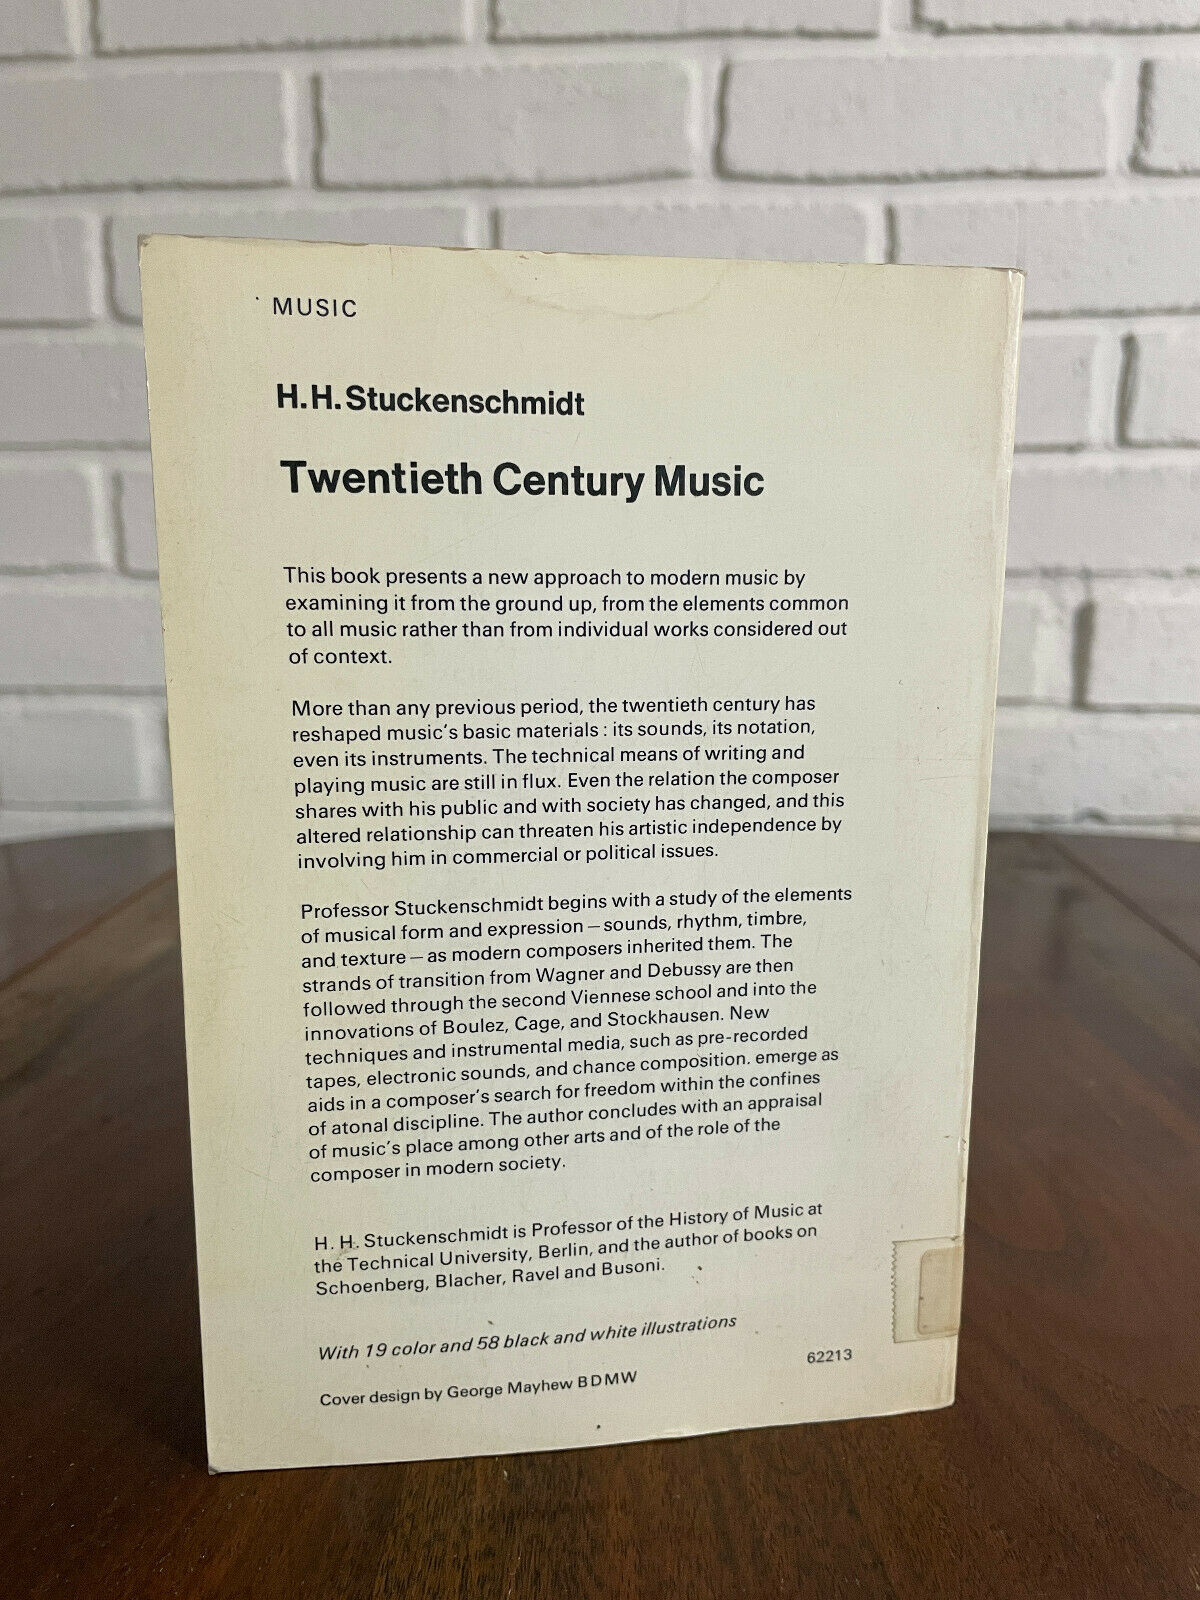 Twentieth Century Music by H.H. Stuckenschmidt